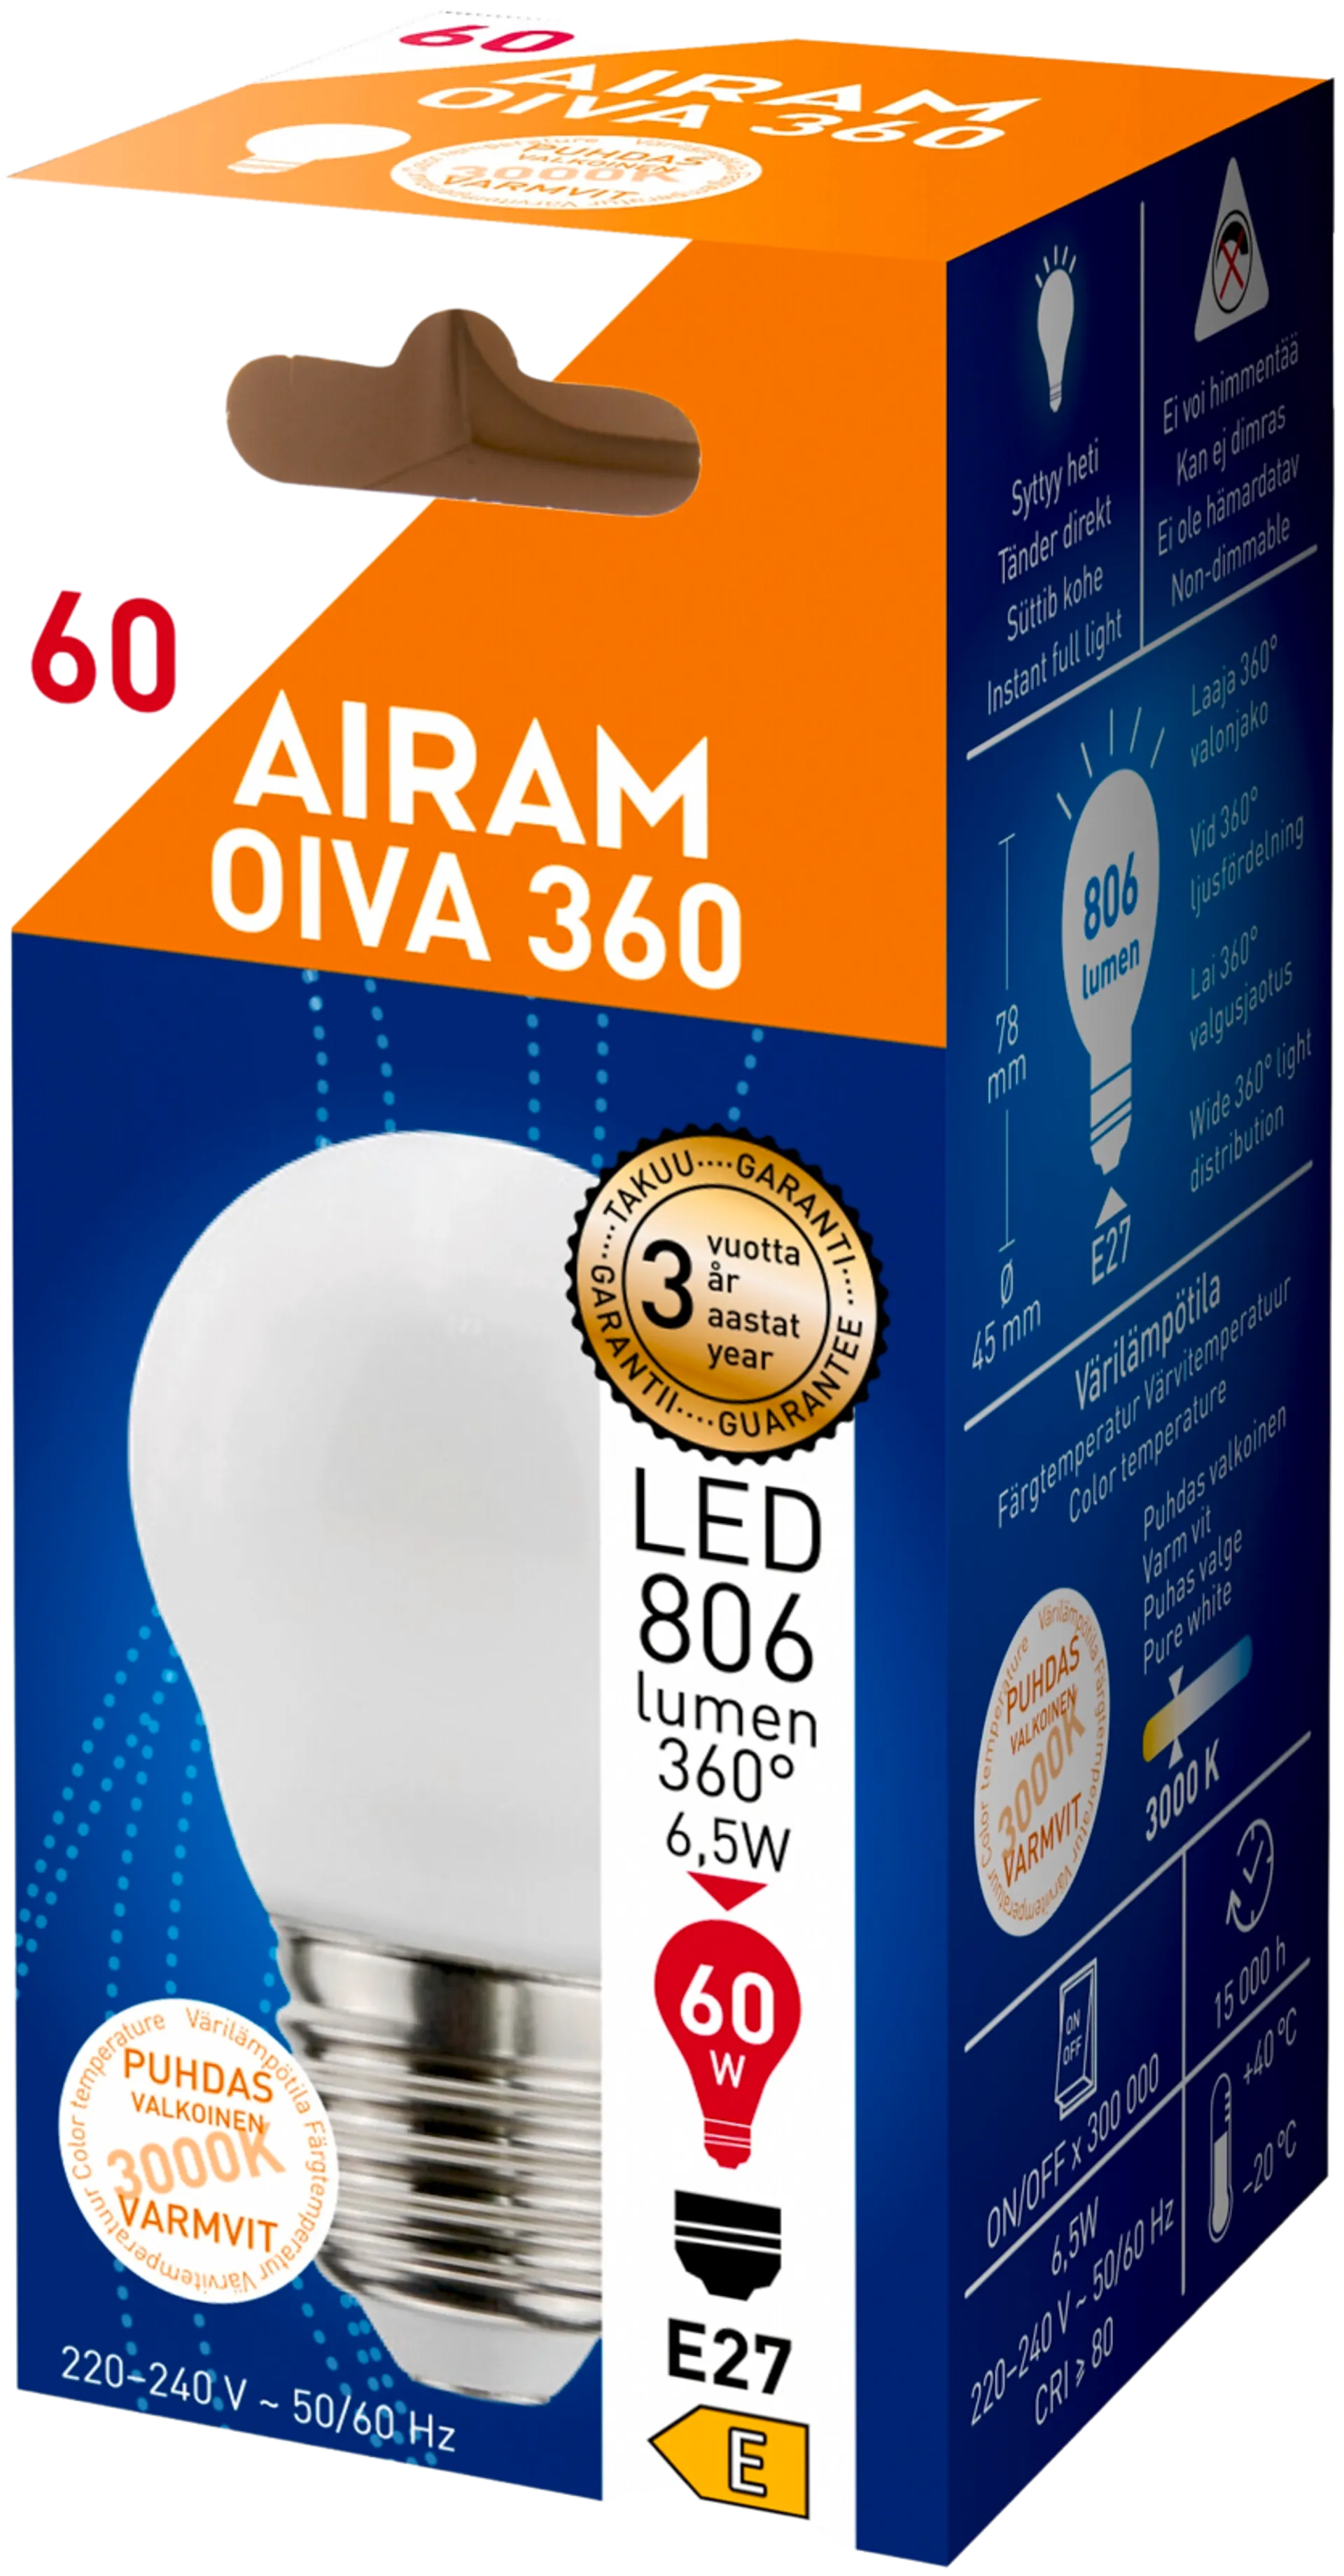 Airam LED OIVA Korist 6W 806lm 3000K E27 - 2